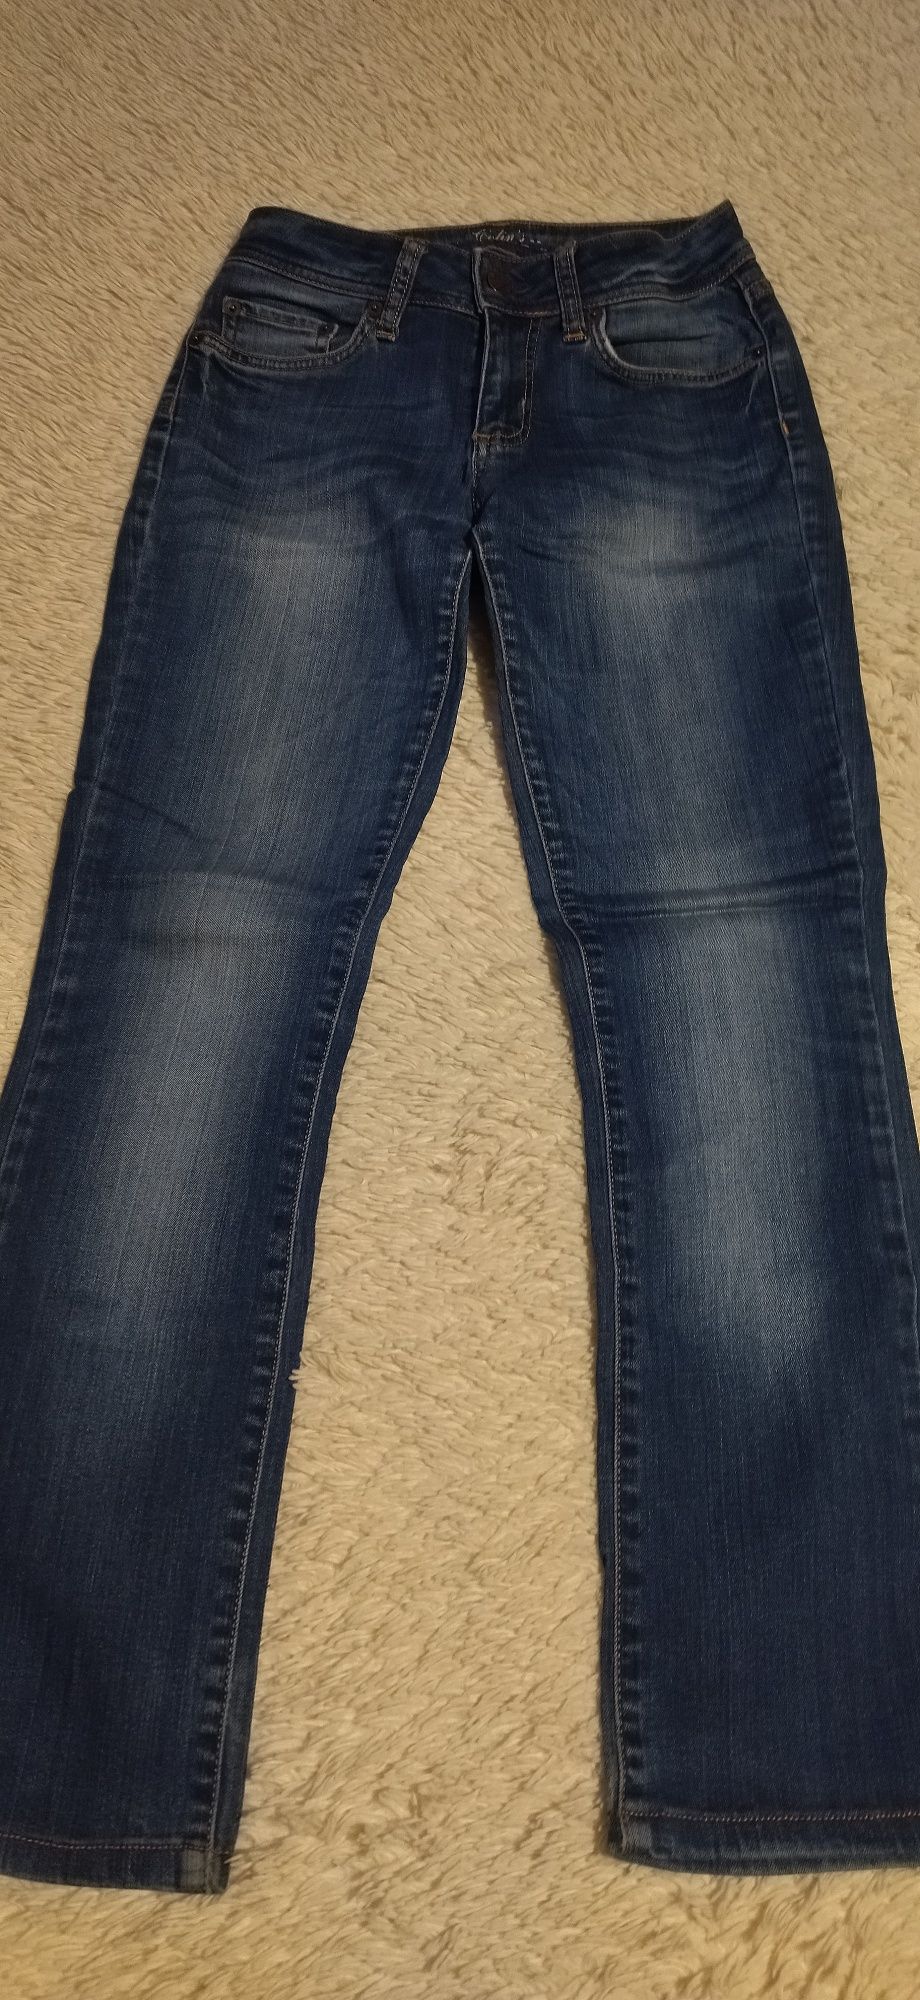 Продам джинсы, размер на 42-44